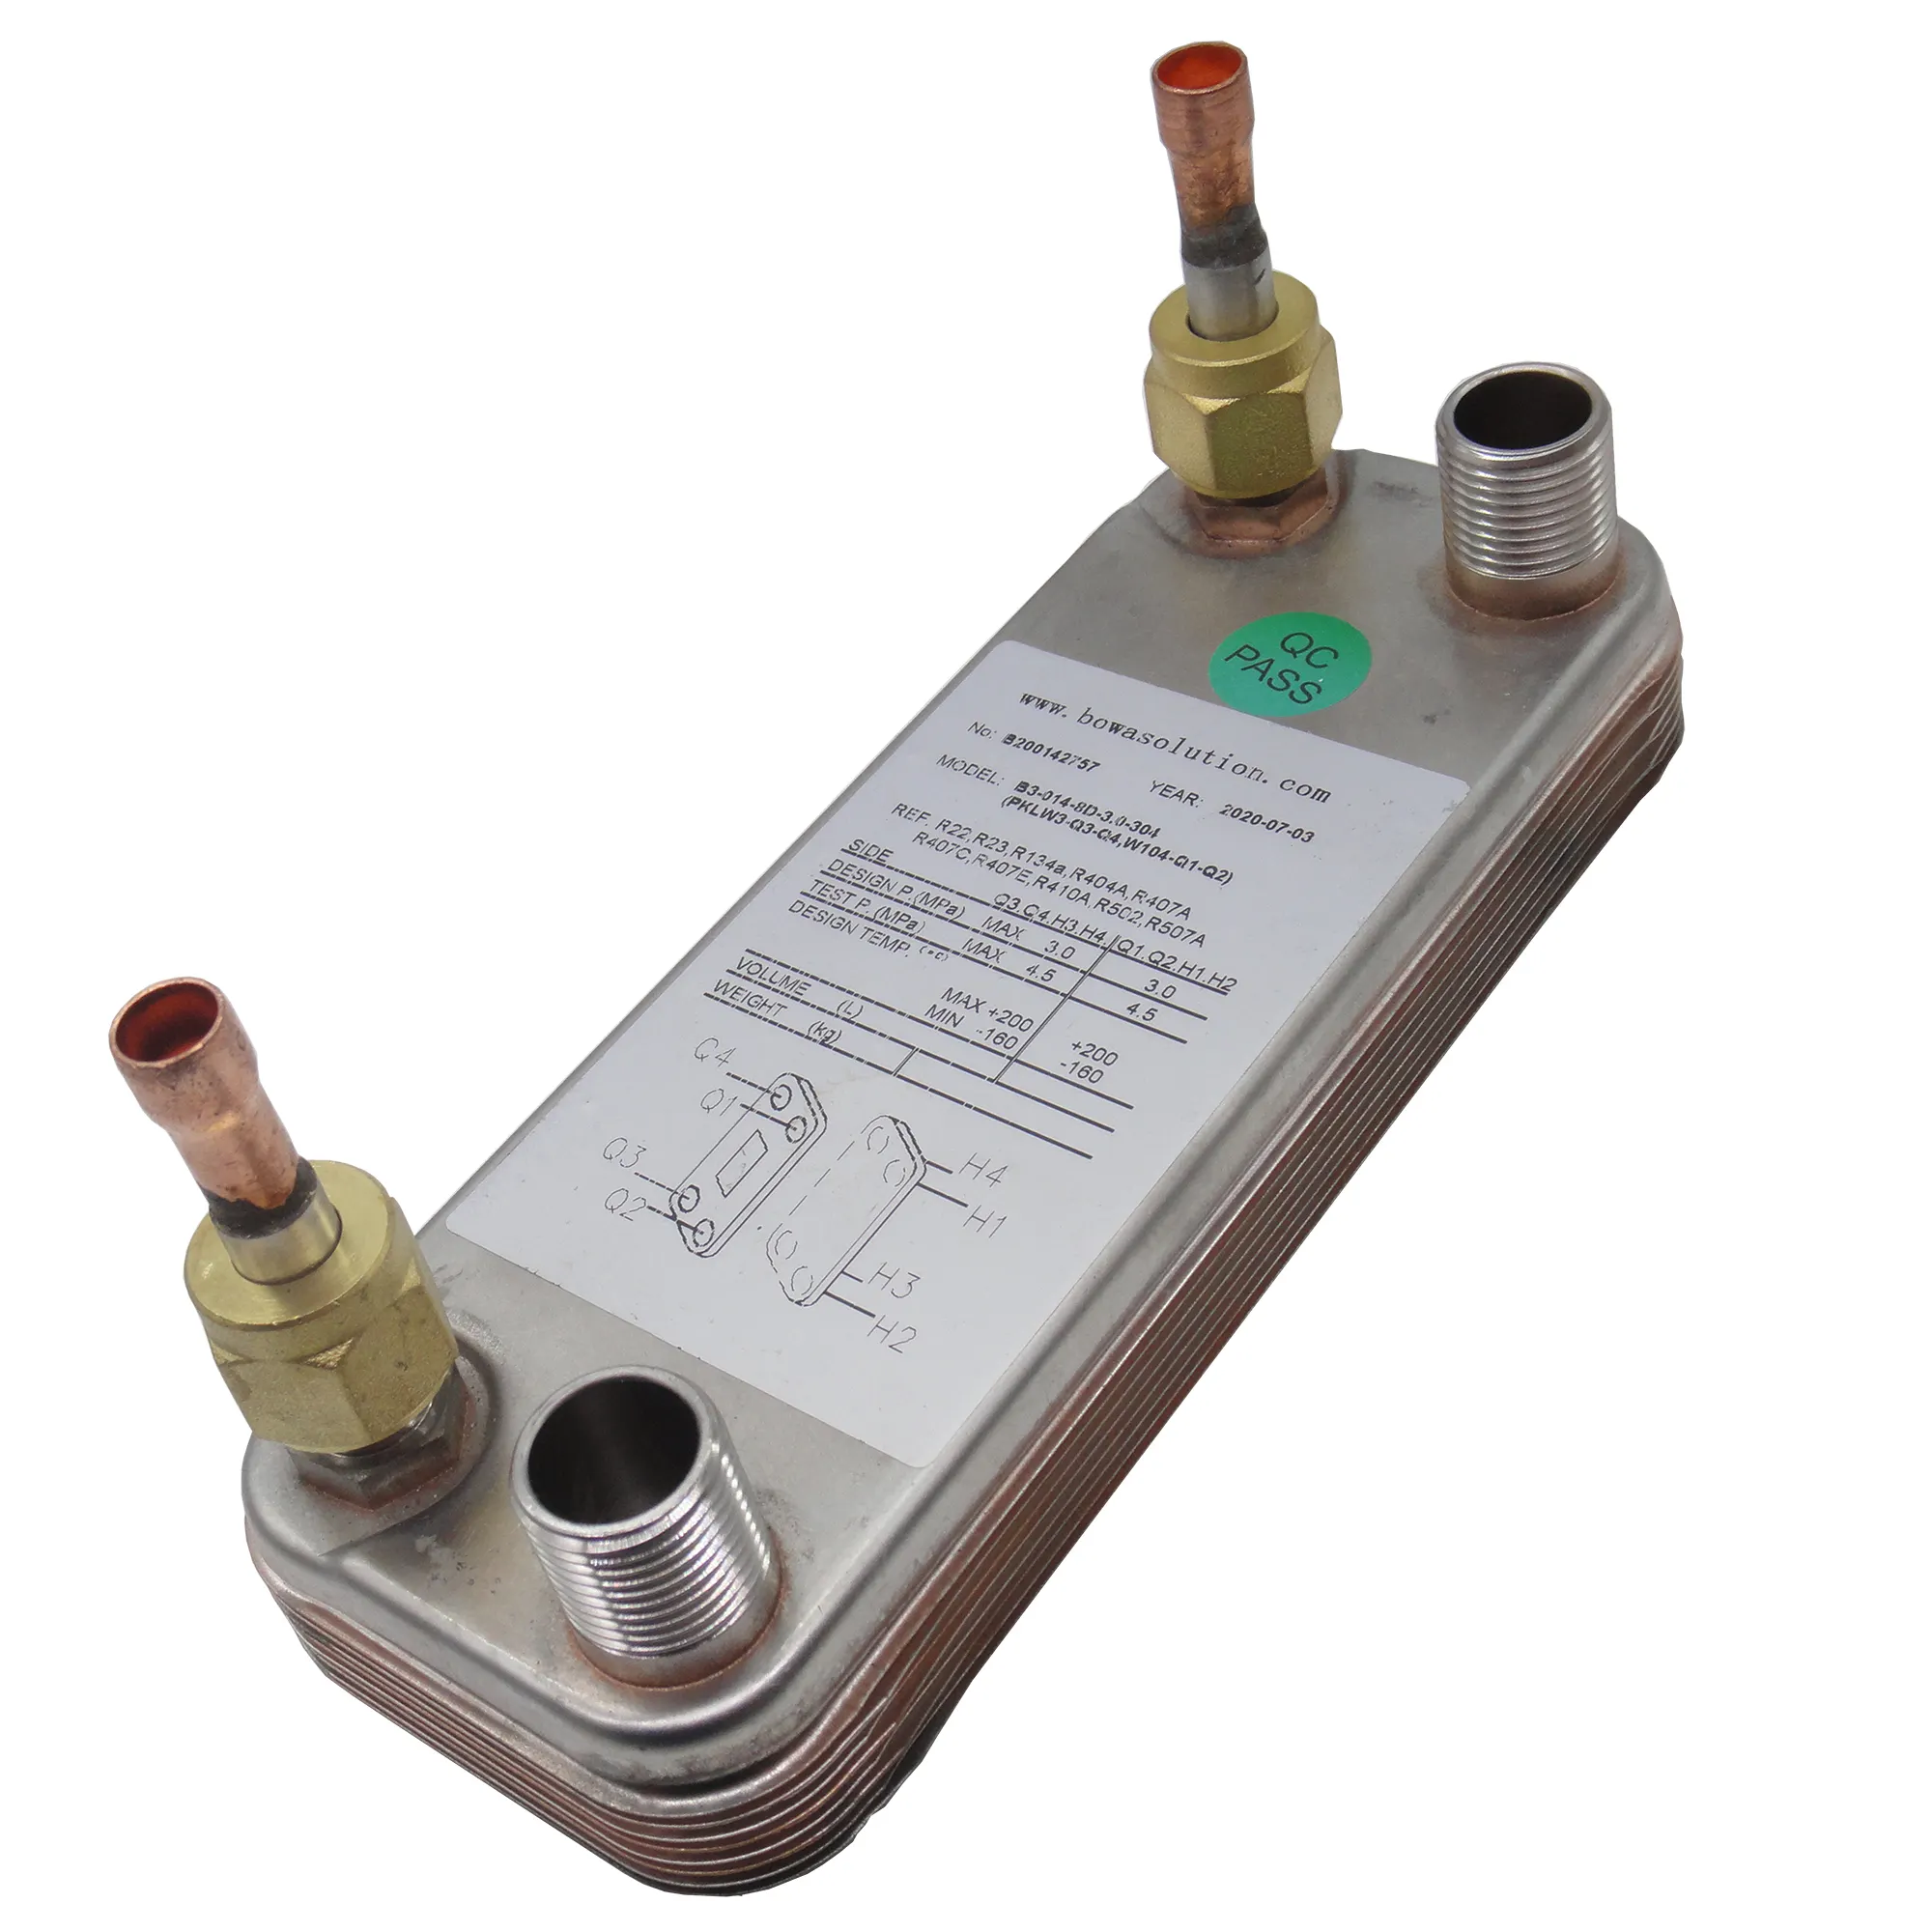 Конденсатор и испаритель теплового насоса водонагревателя 340 ккал используются в электронных устройствах и лабораторном оборудовании для поддержания температуры.